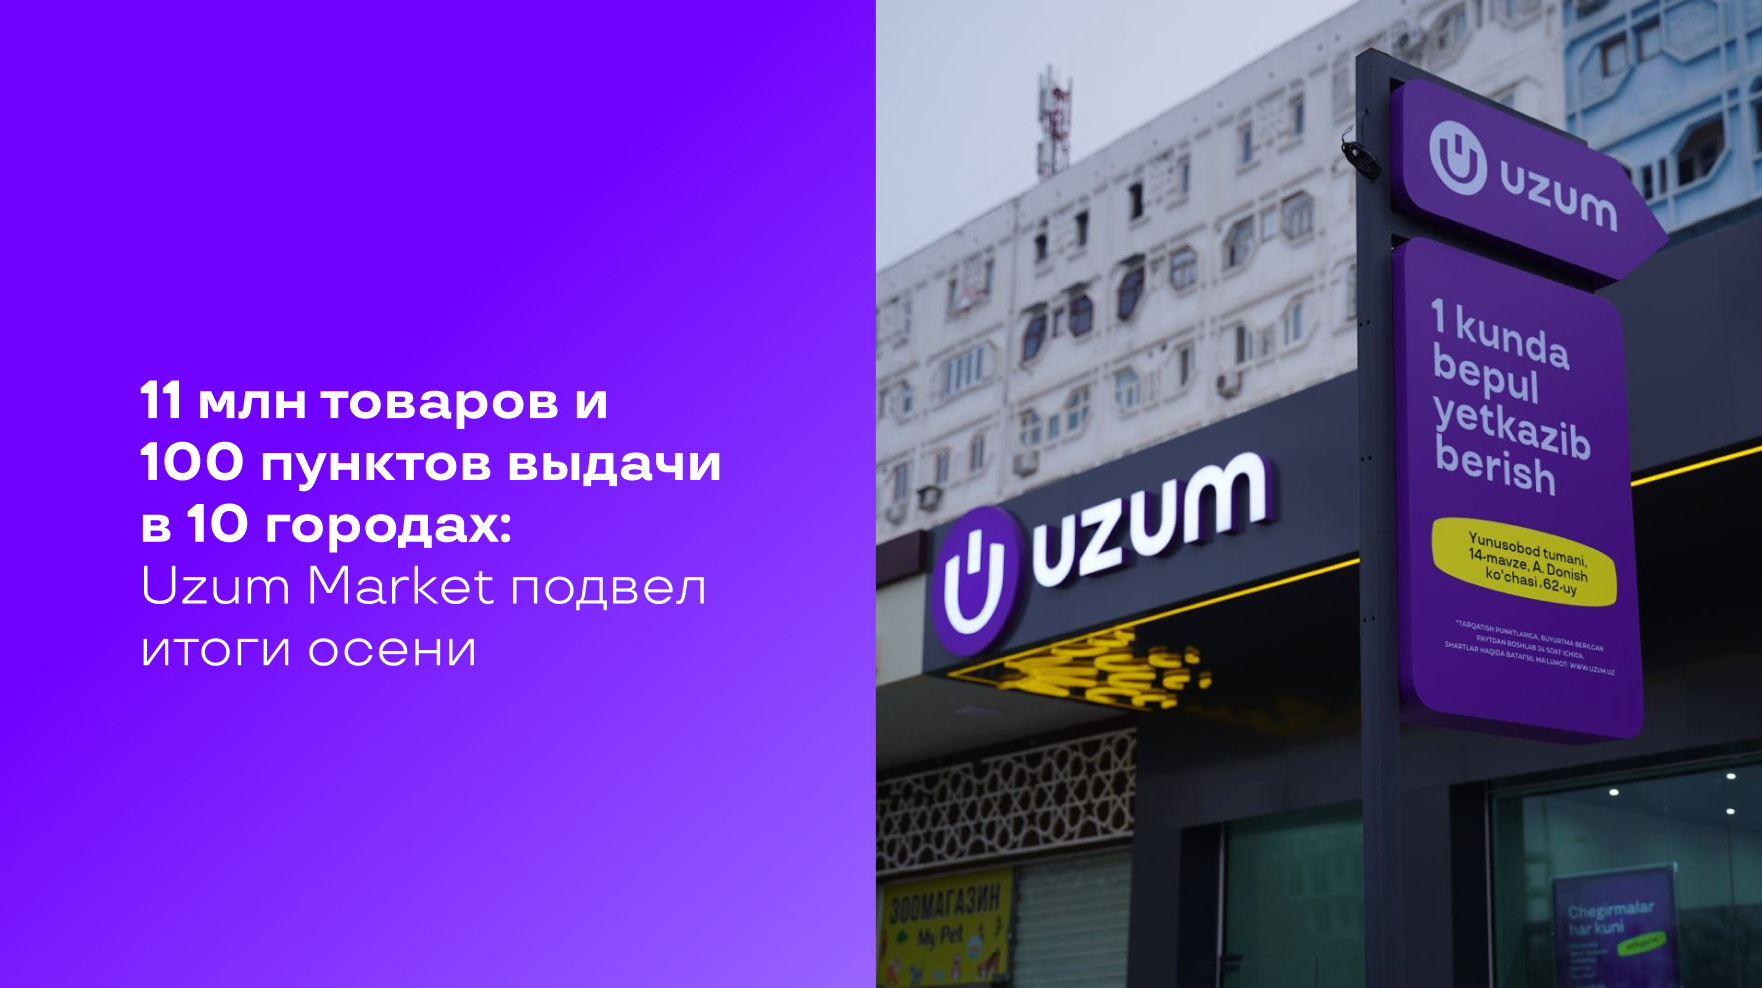 11 млн товаров и 100 пунктов выдачи в 10 городах: Uzum Market подвел итоги осени